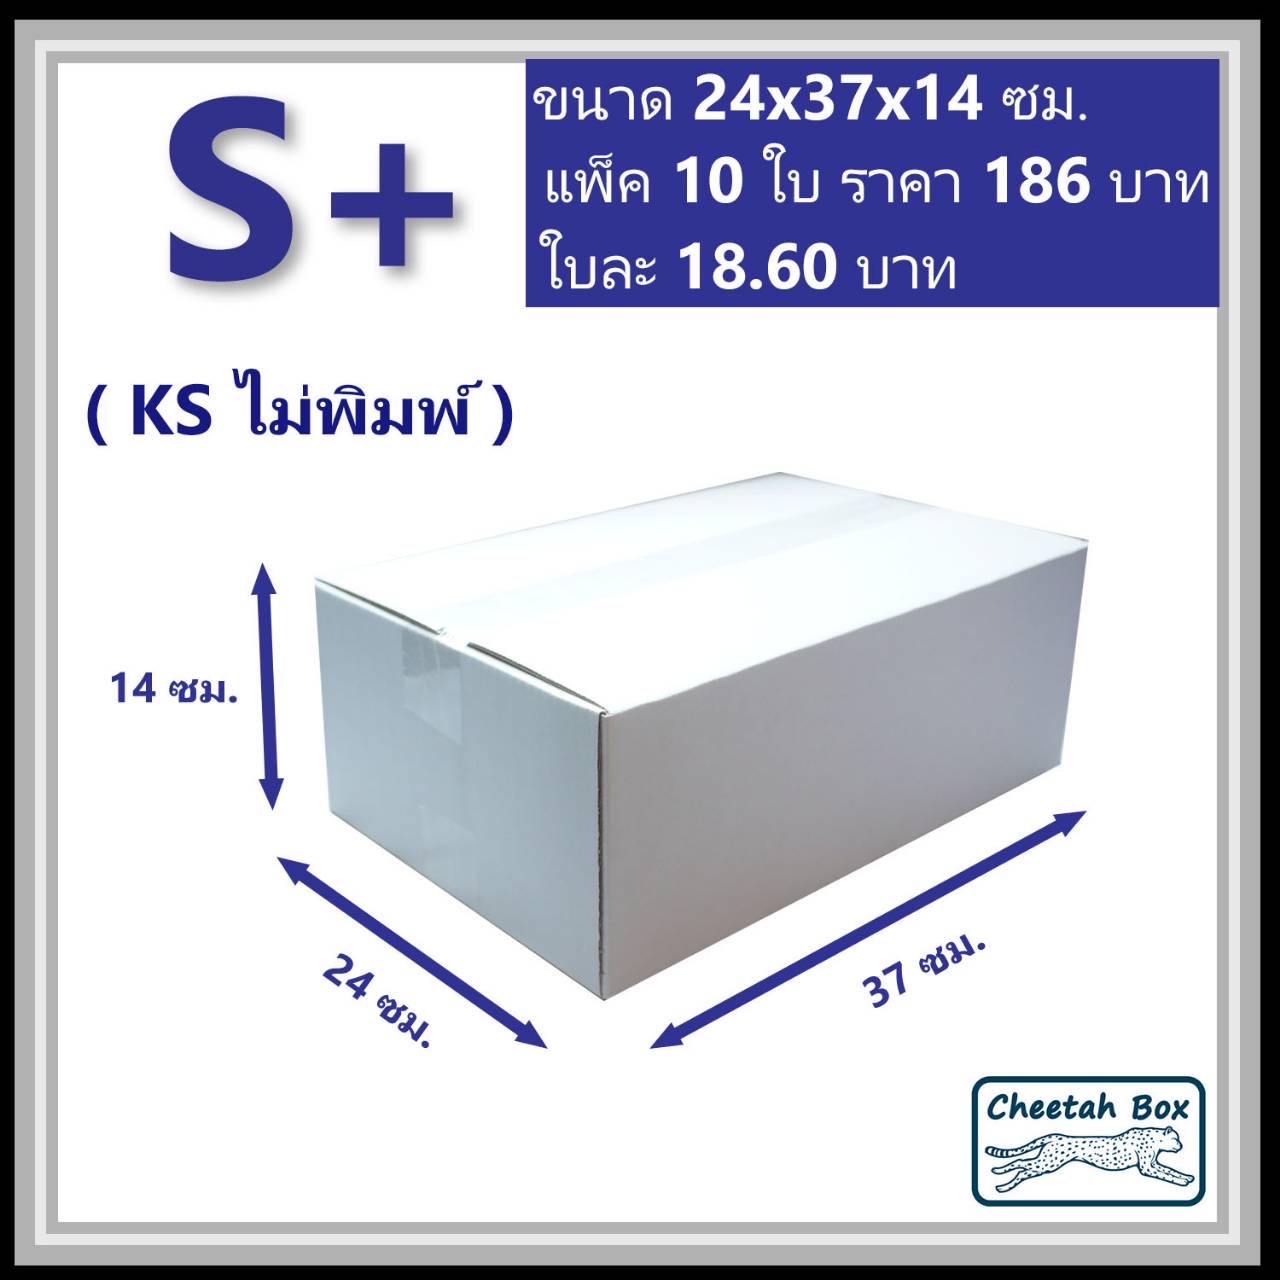 กล่องพัสดุขาว S+ รหัส WBS+ กระดาษ KA ด้านใน ไม่พิมพ์ (White Box) 24W x 37L x 14H cm.